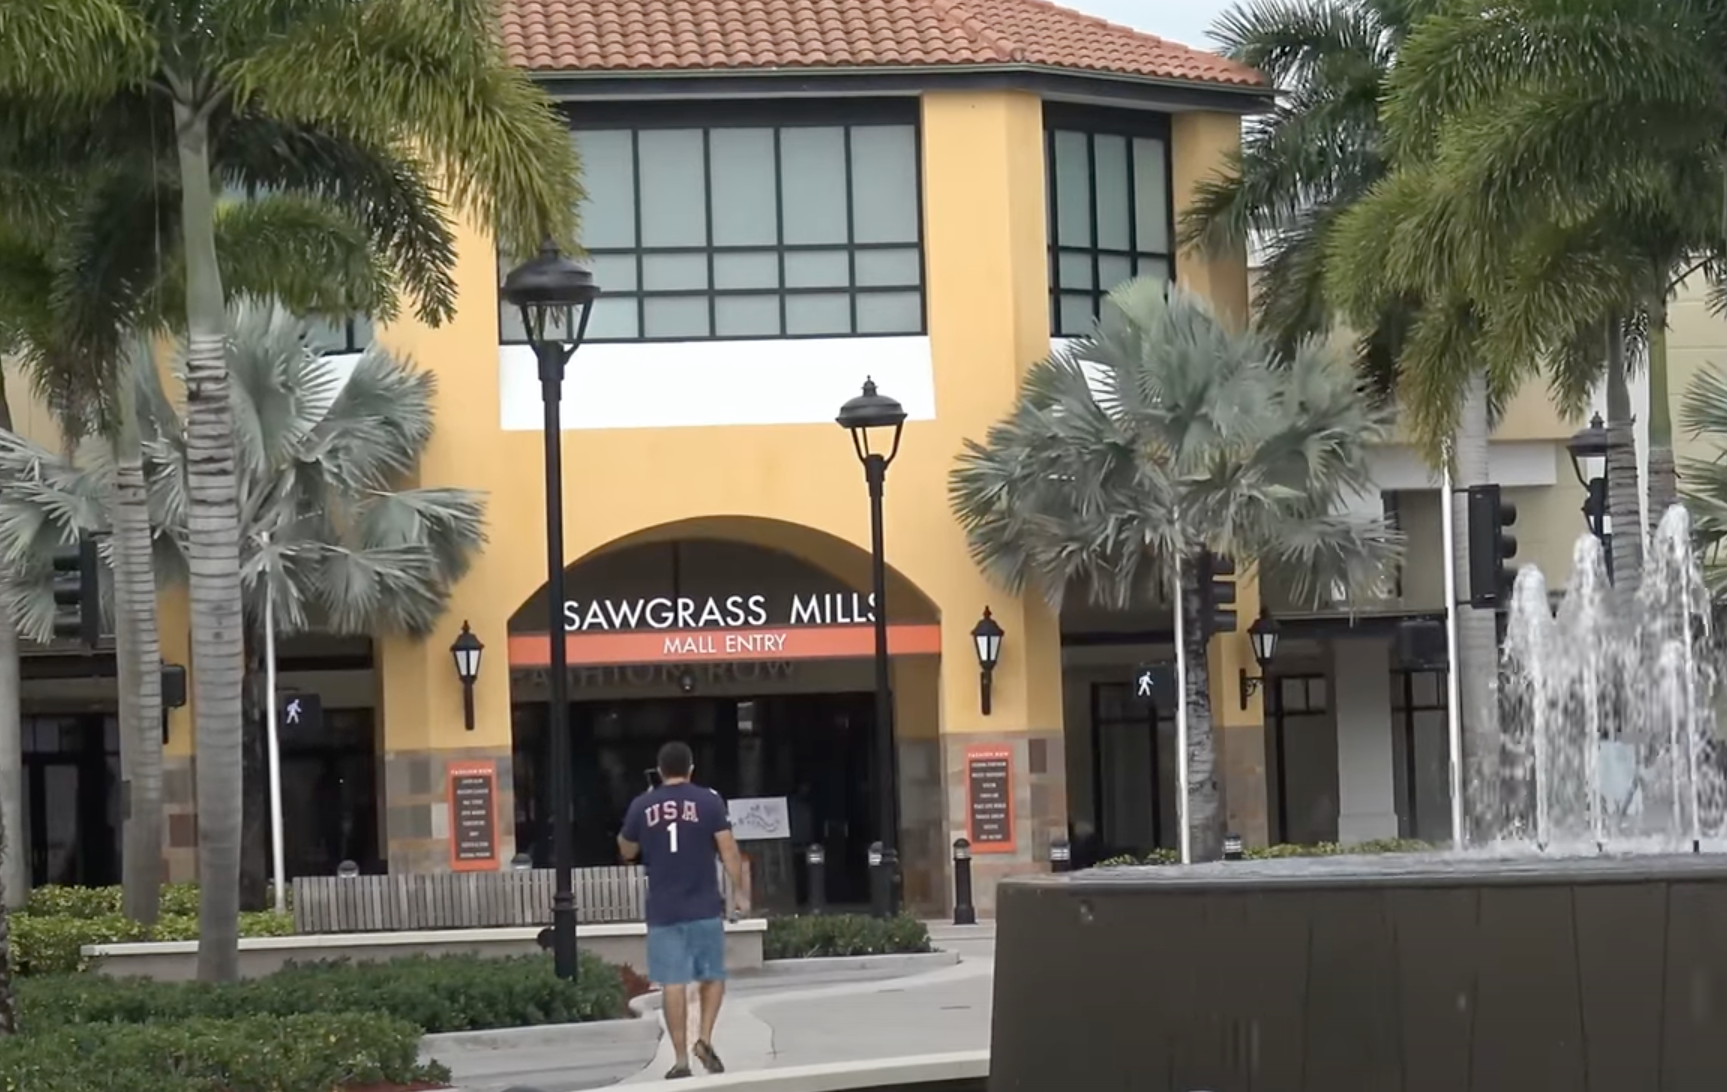 Shopping é o segundo maior do sul da Flórida, atrás apenas do Aventura Mall (foto: YouTube)